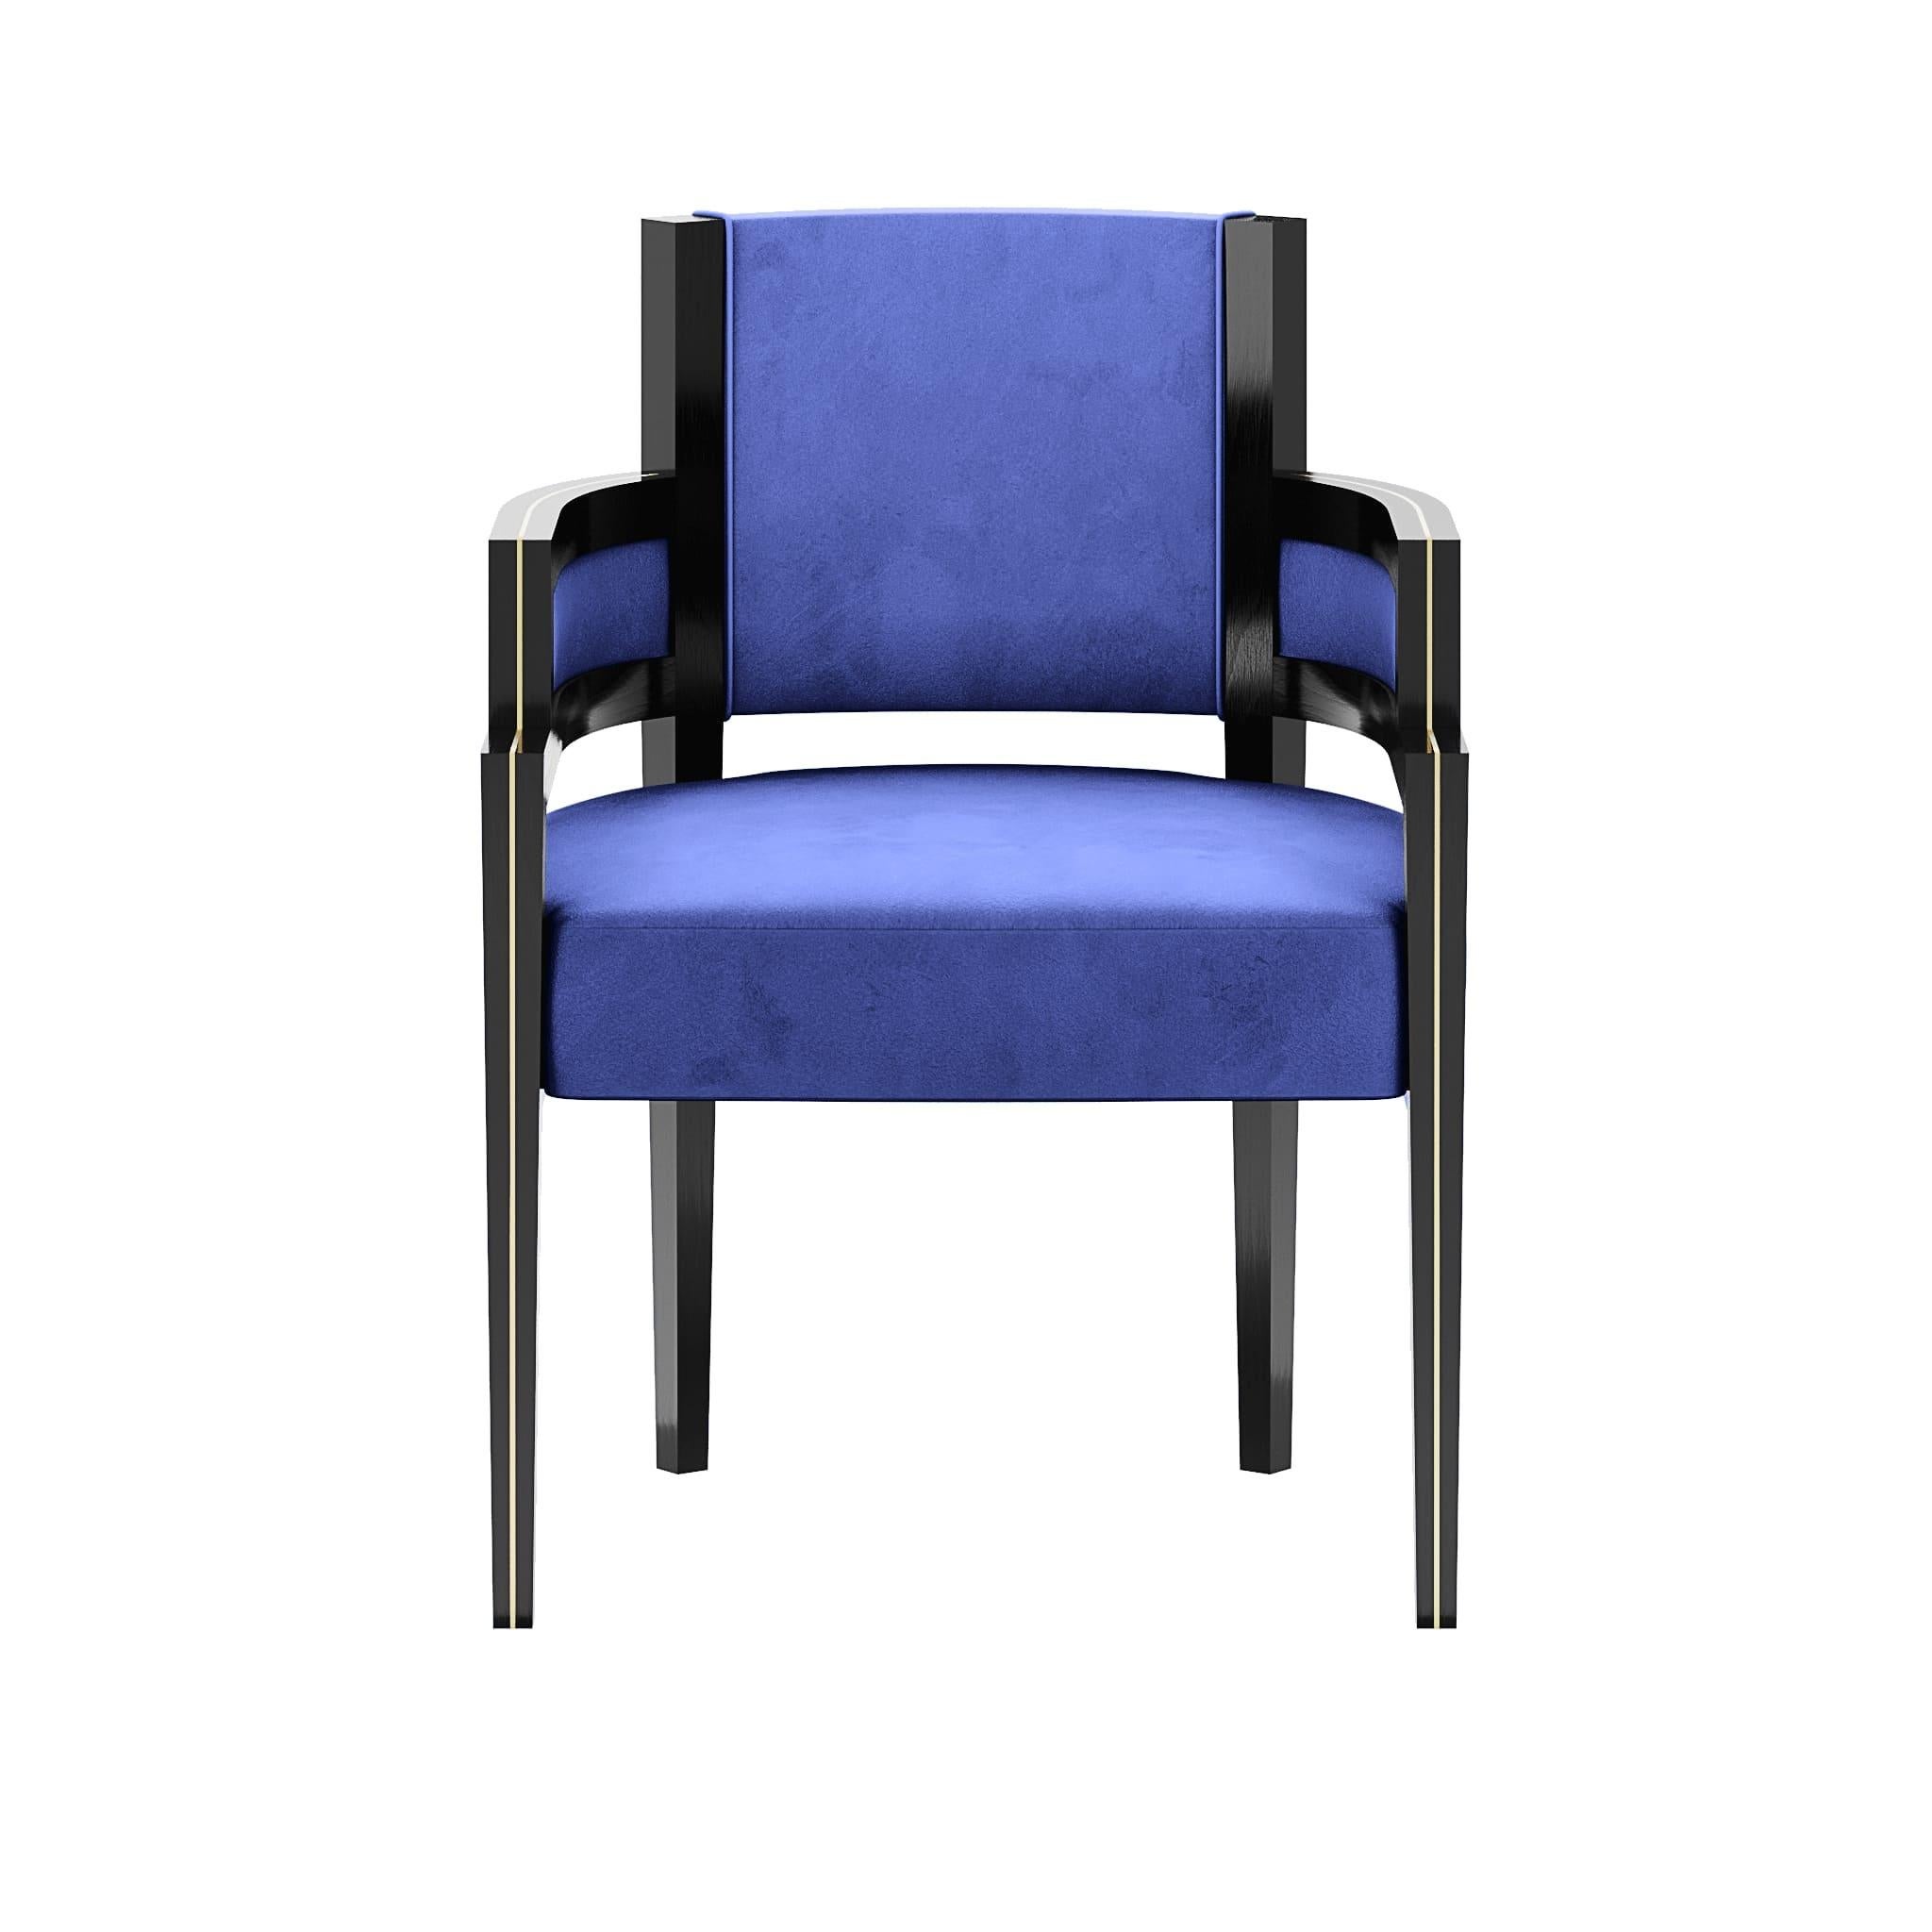 Pina Chair ist ein Esszimmerstuhl im Art-Déco-Stil, dessen Form den besten Komfort für die Gäste bietet. Er ist mit Samt gepolstert und hat eine moderne Holzstruktur. Perfekt für moderne Esszimmerprojekte, die eine klassisch-schicke Ausstrahlung